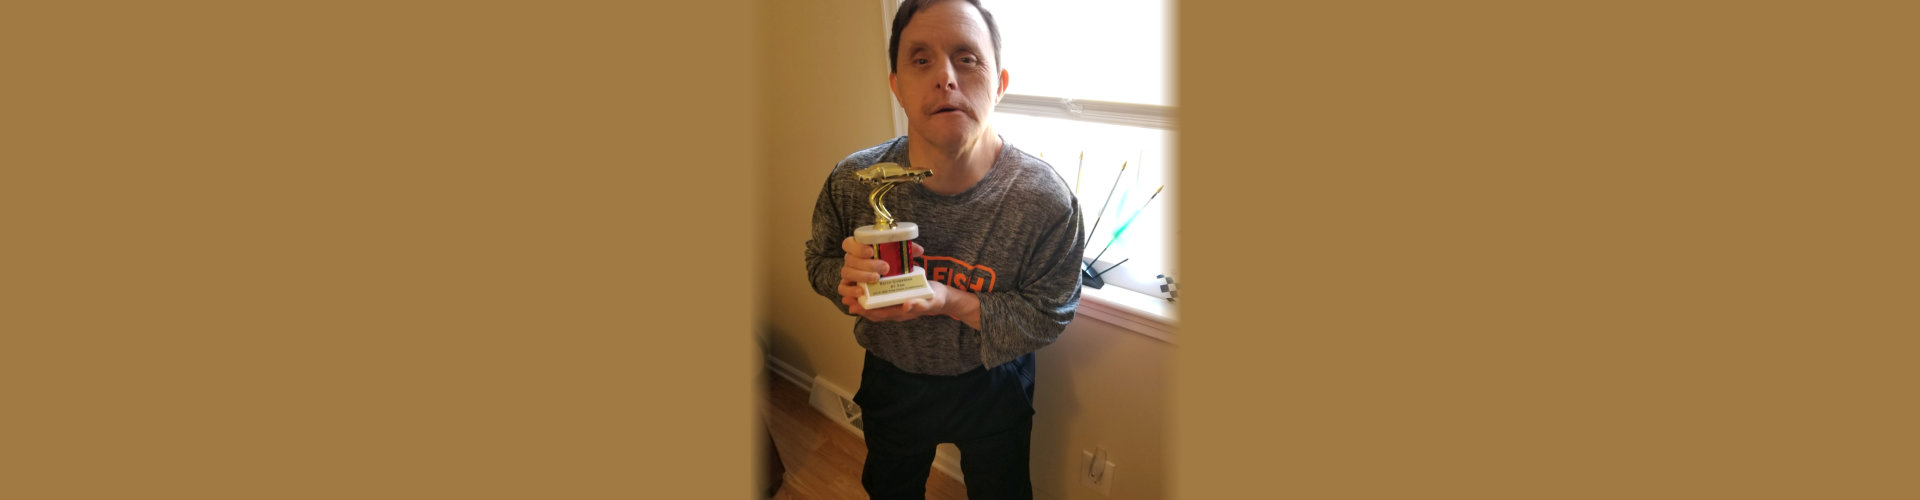 boy holding an award